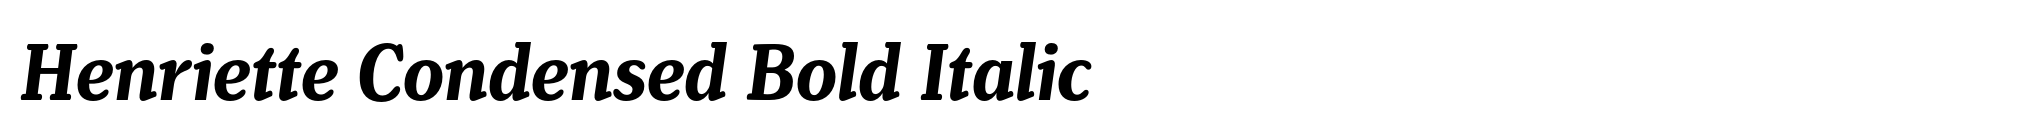 Henriette Condensed Bold Italic image